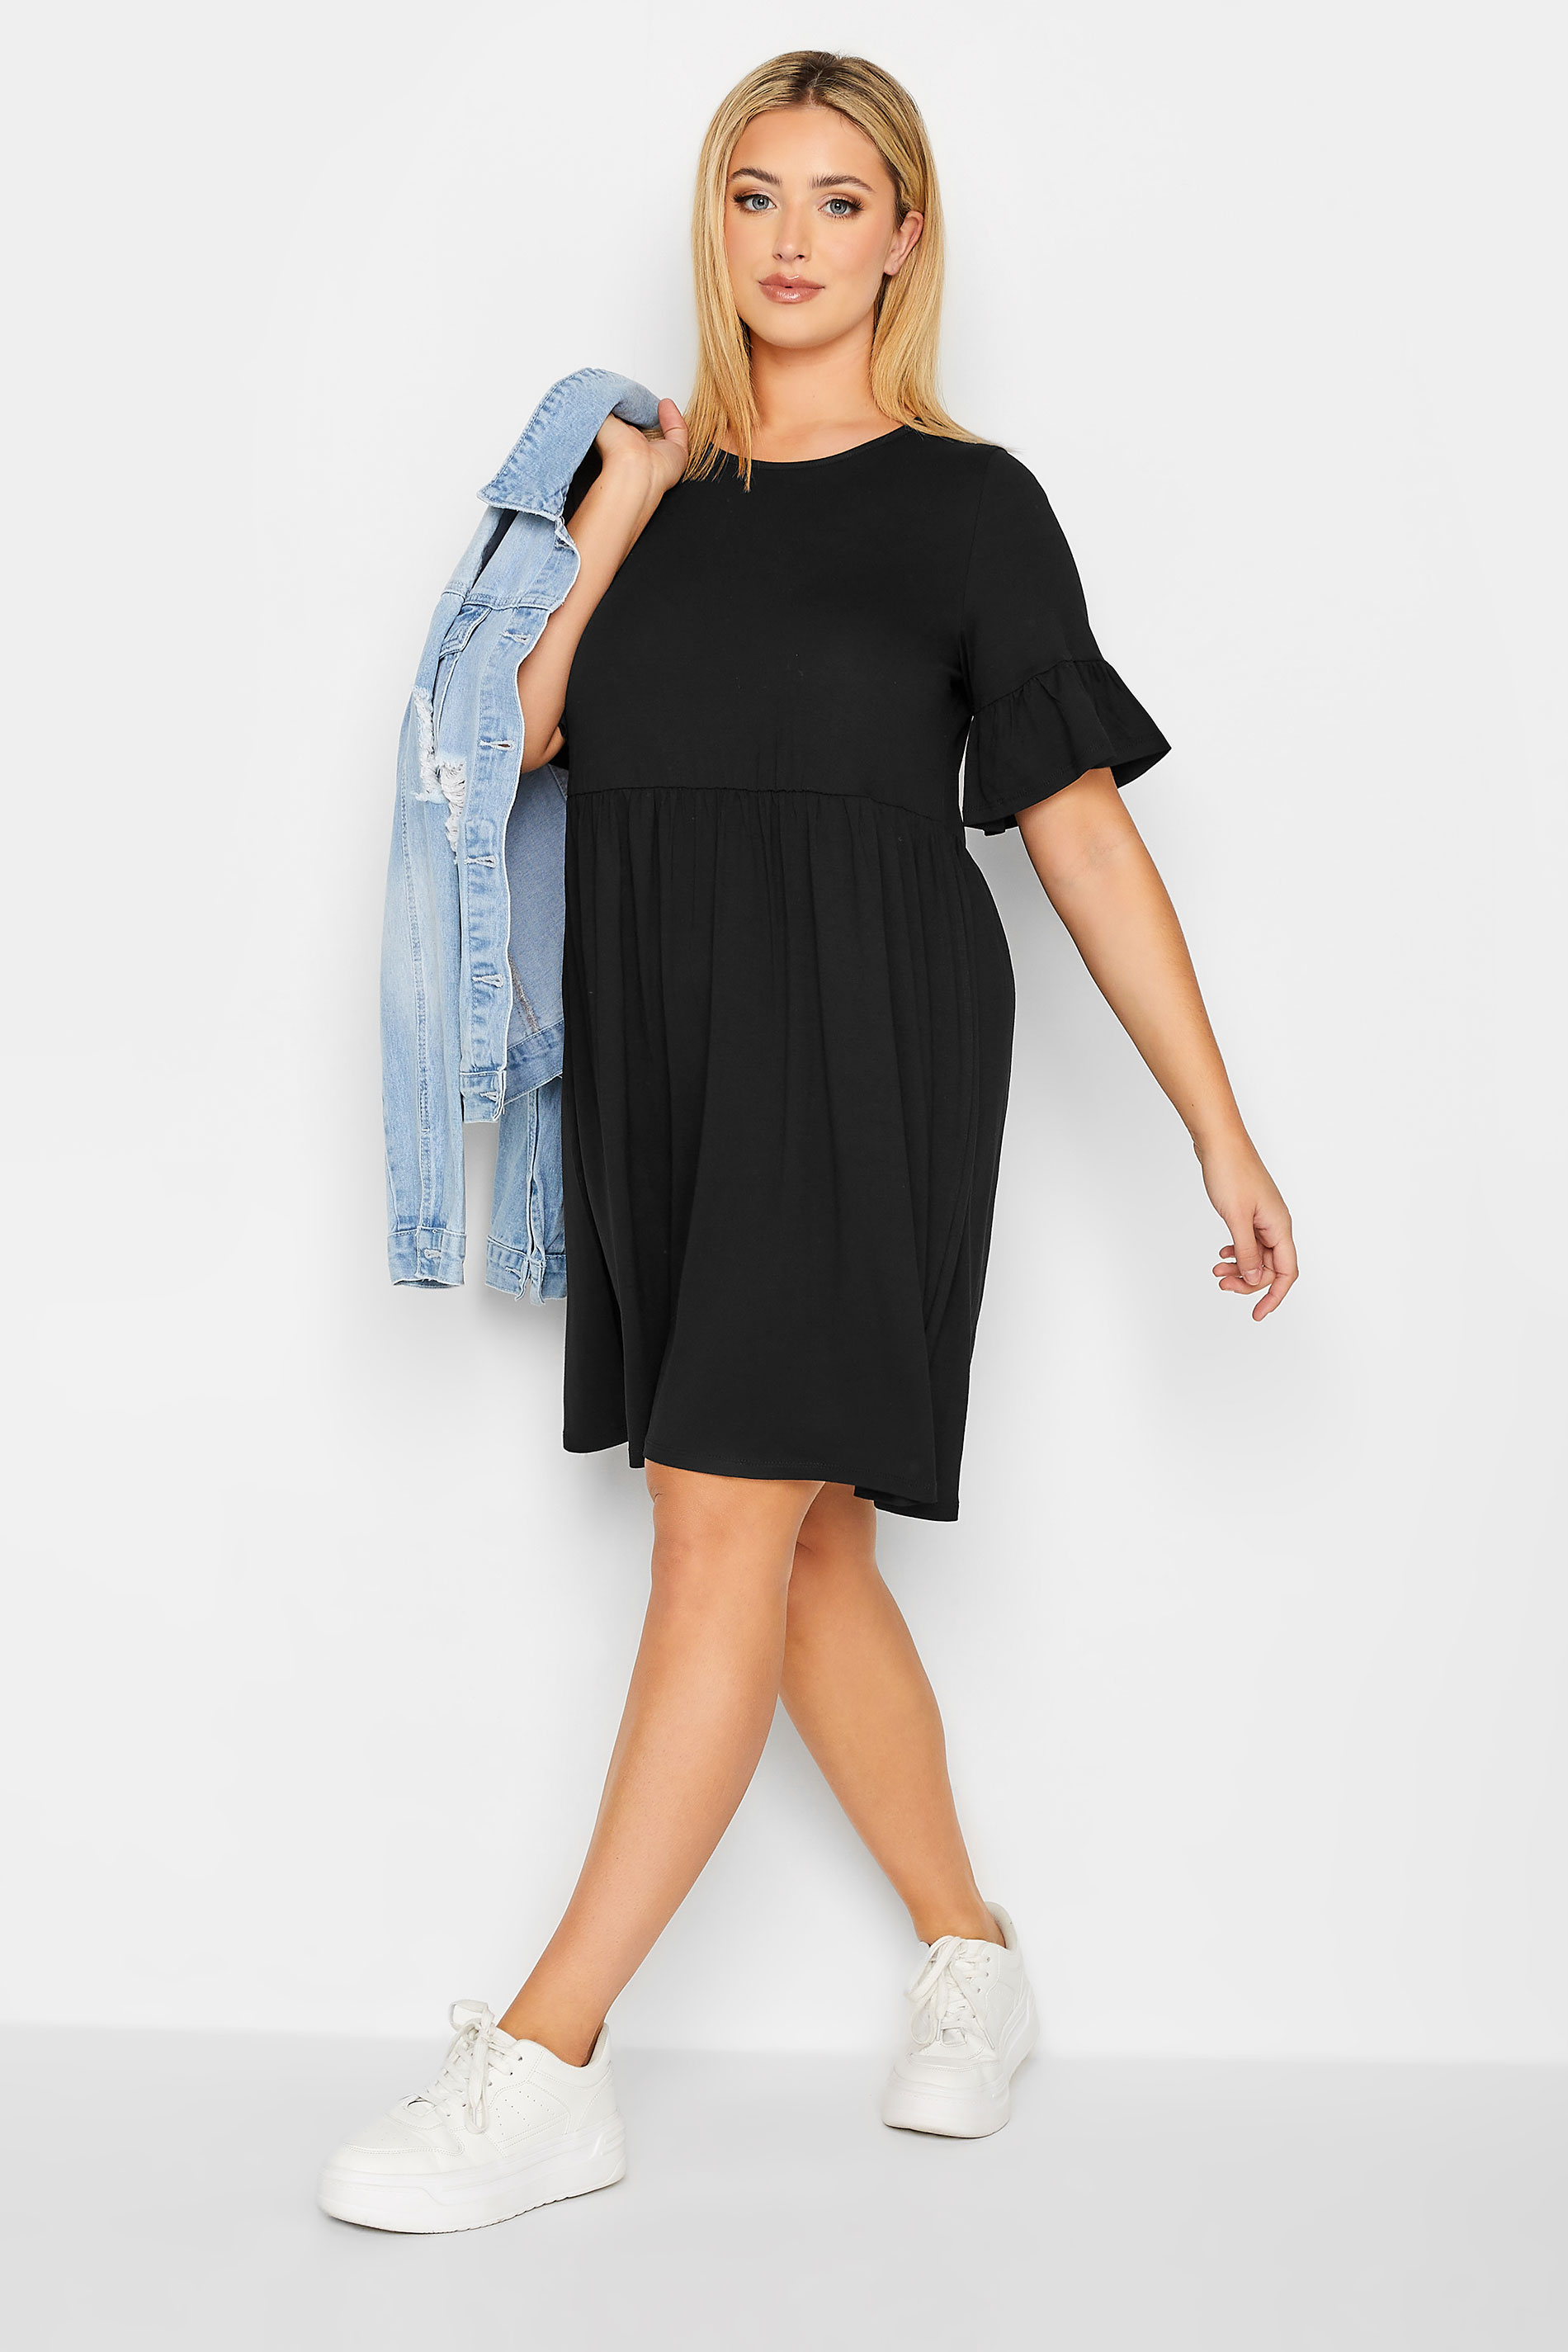 Plus Size Black Smock Tunic Dress | Yours Clothing 2